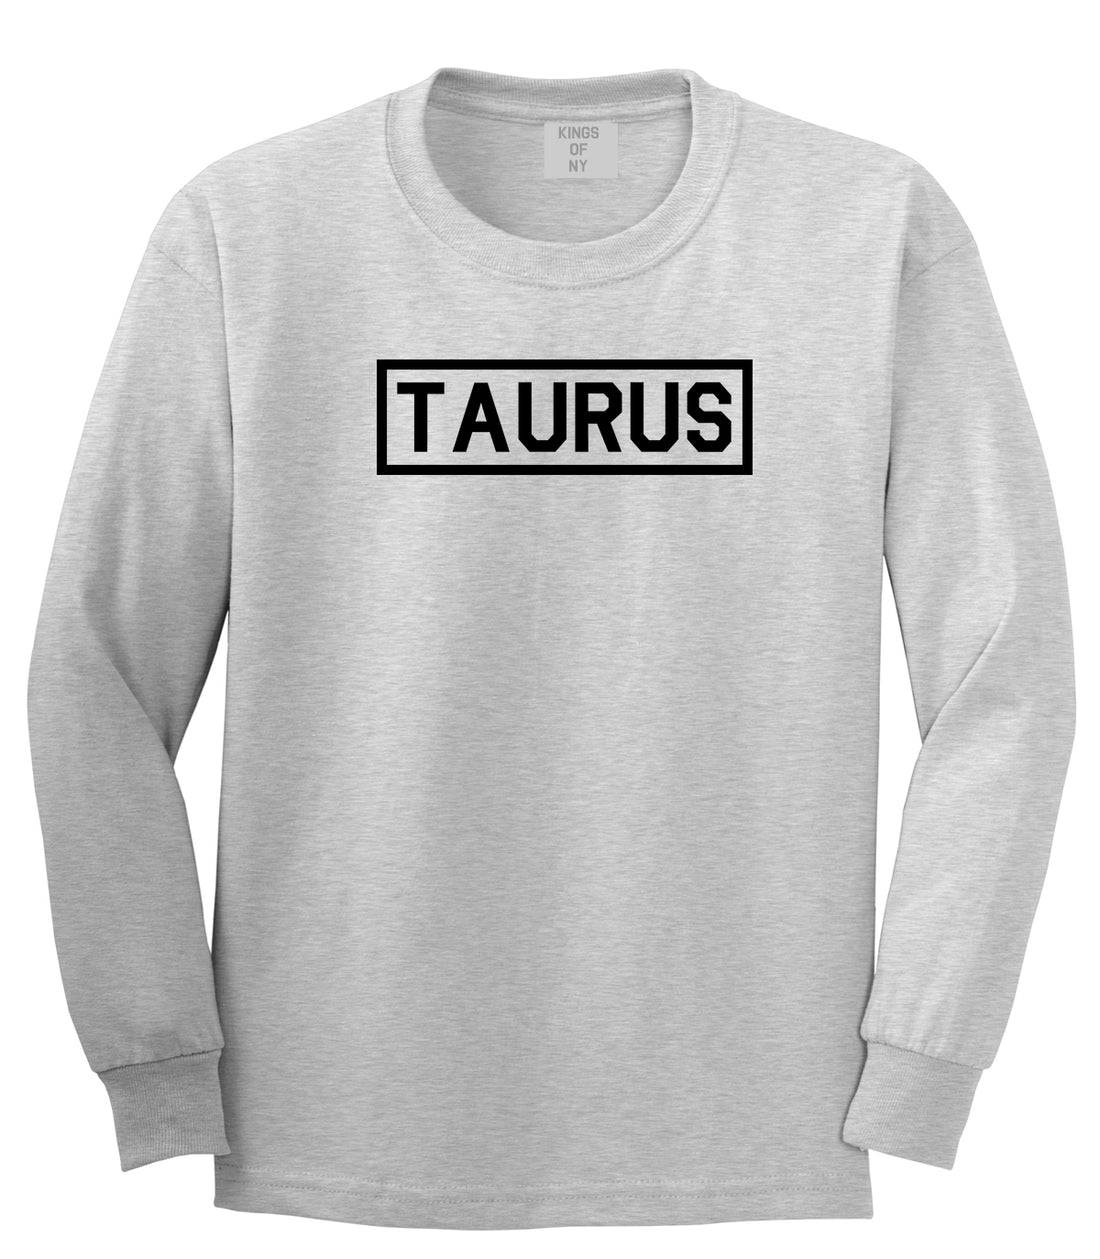 Taurus Horoscope Sign Mens Grey Long Sleeve T-Shirt by KINGS OF NY